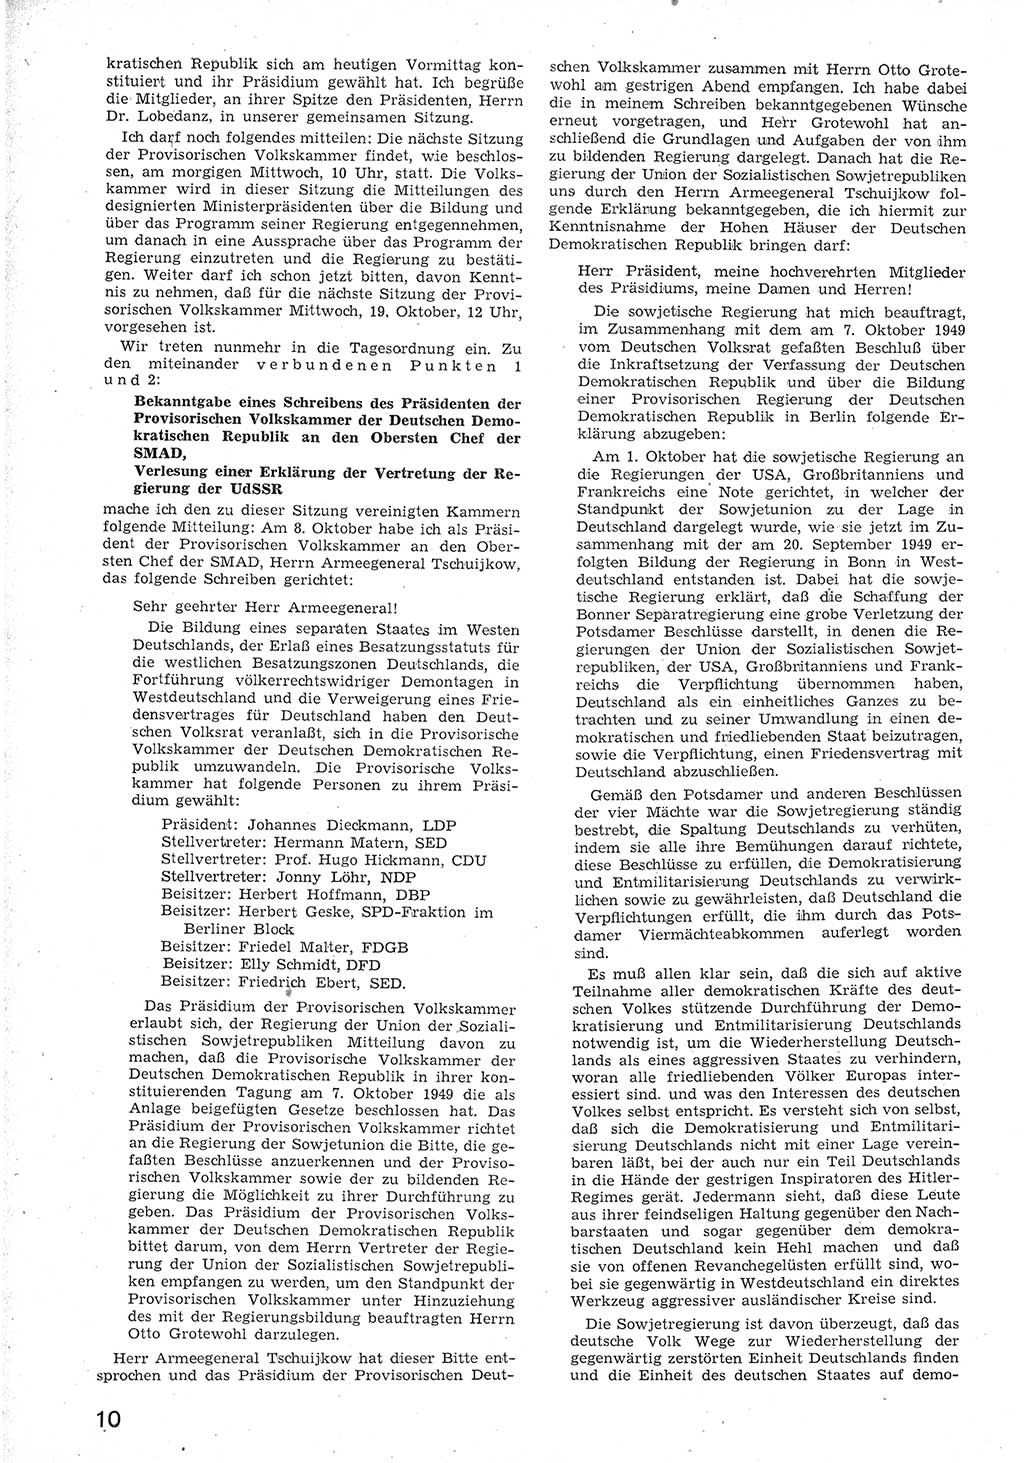 Provisorische Volkskammer (VK) der Deutschen Demokratischen Republik (DDR) 1949-1950, Dokument 22 (Prov. VK DDR 1949-1950, Dok. 22)